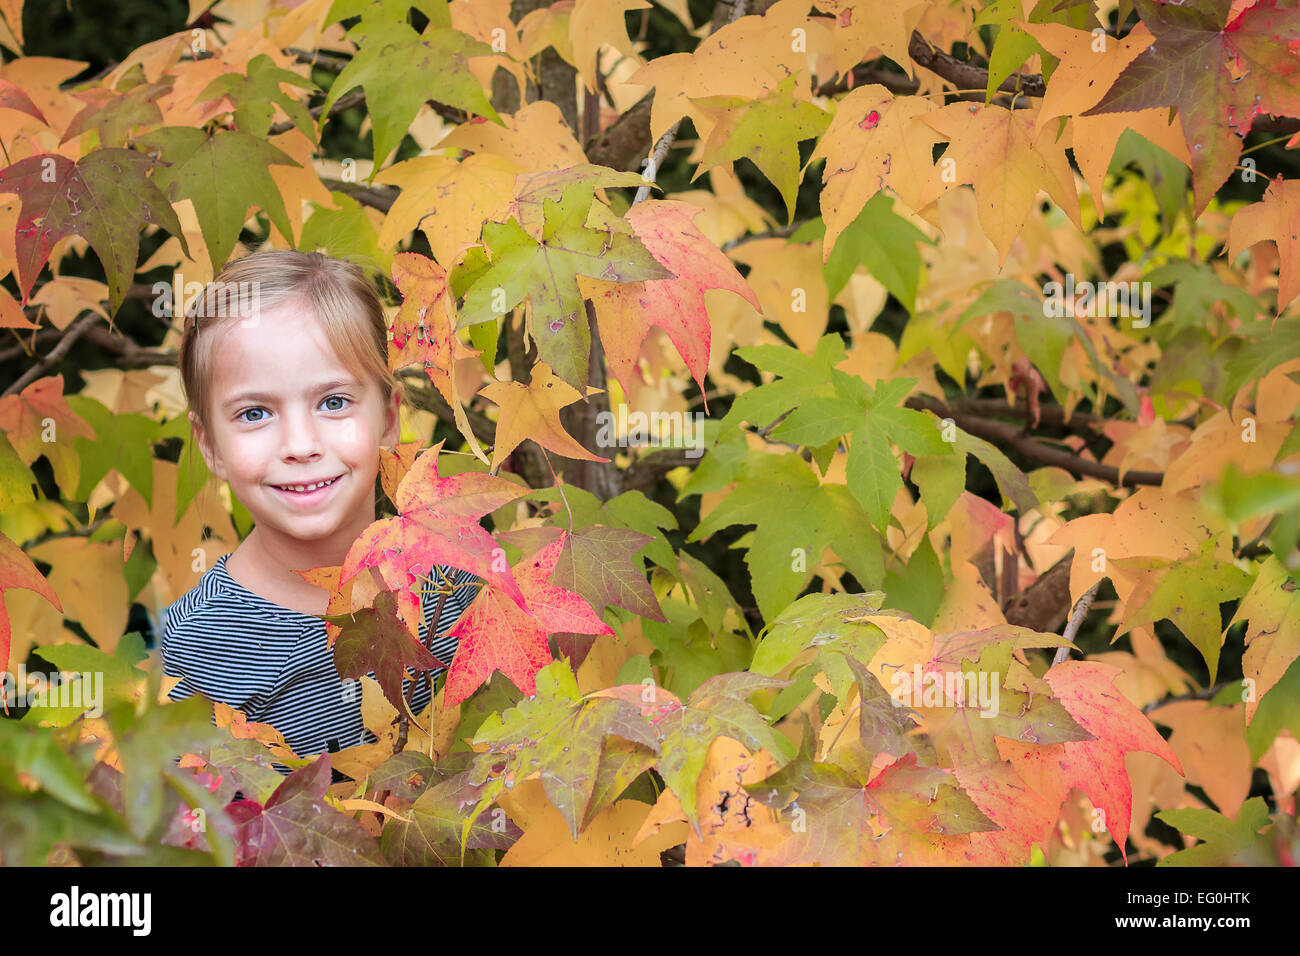 Girl standing amongst leaves Stock Photo